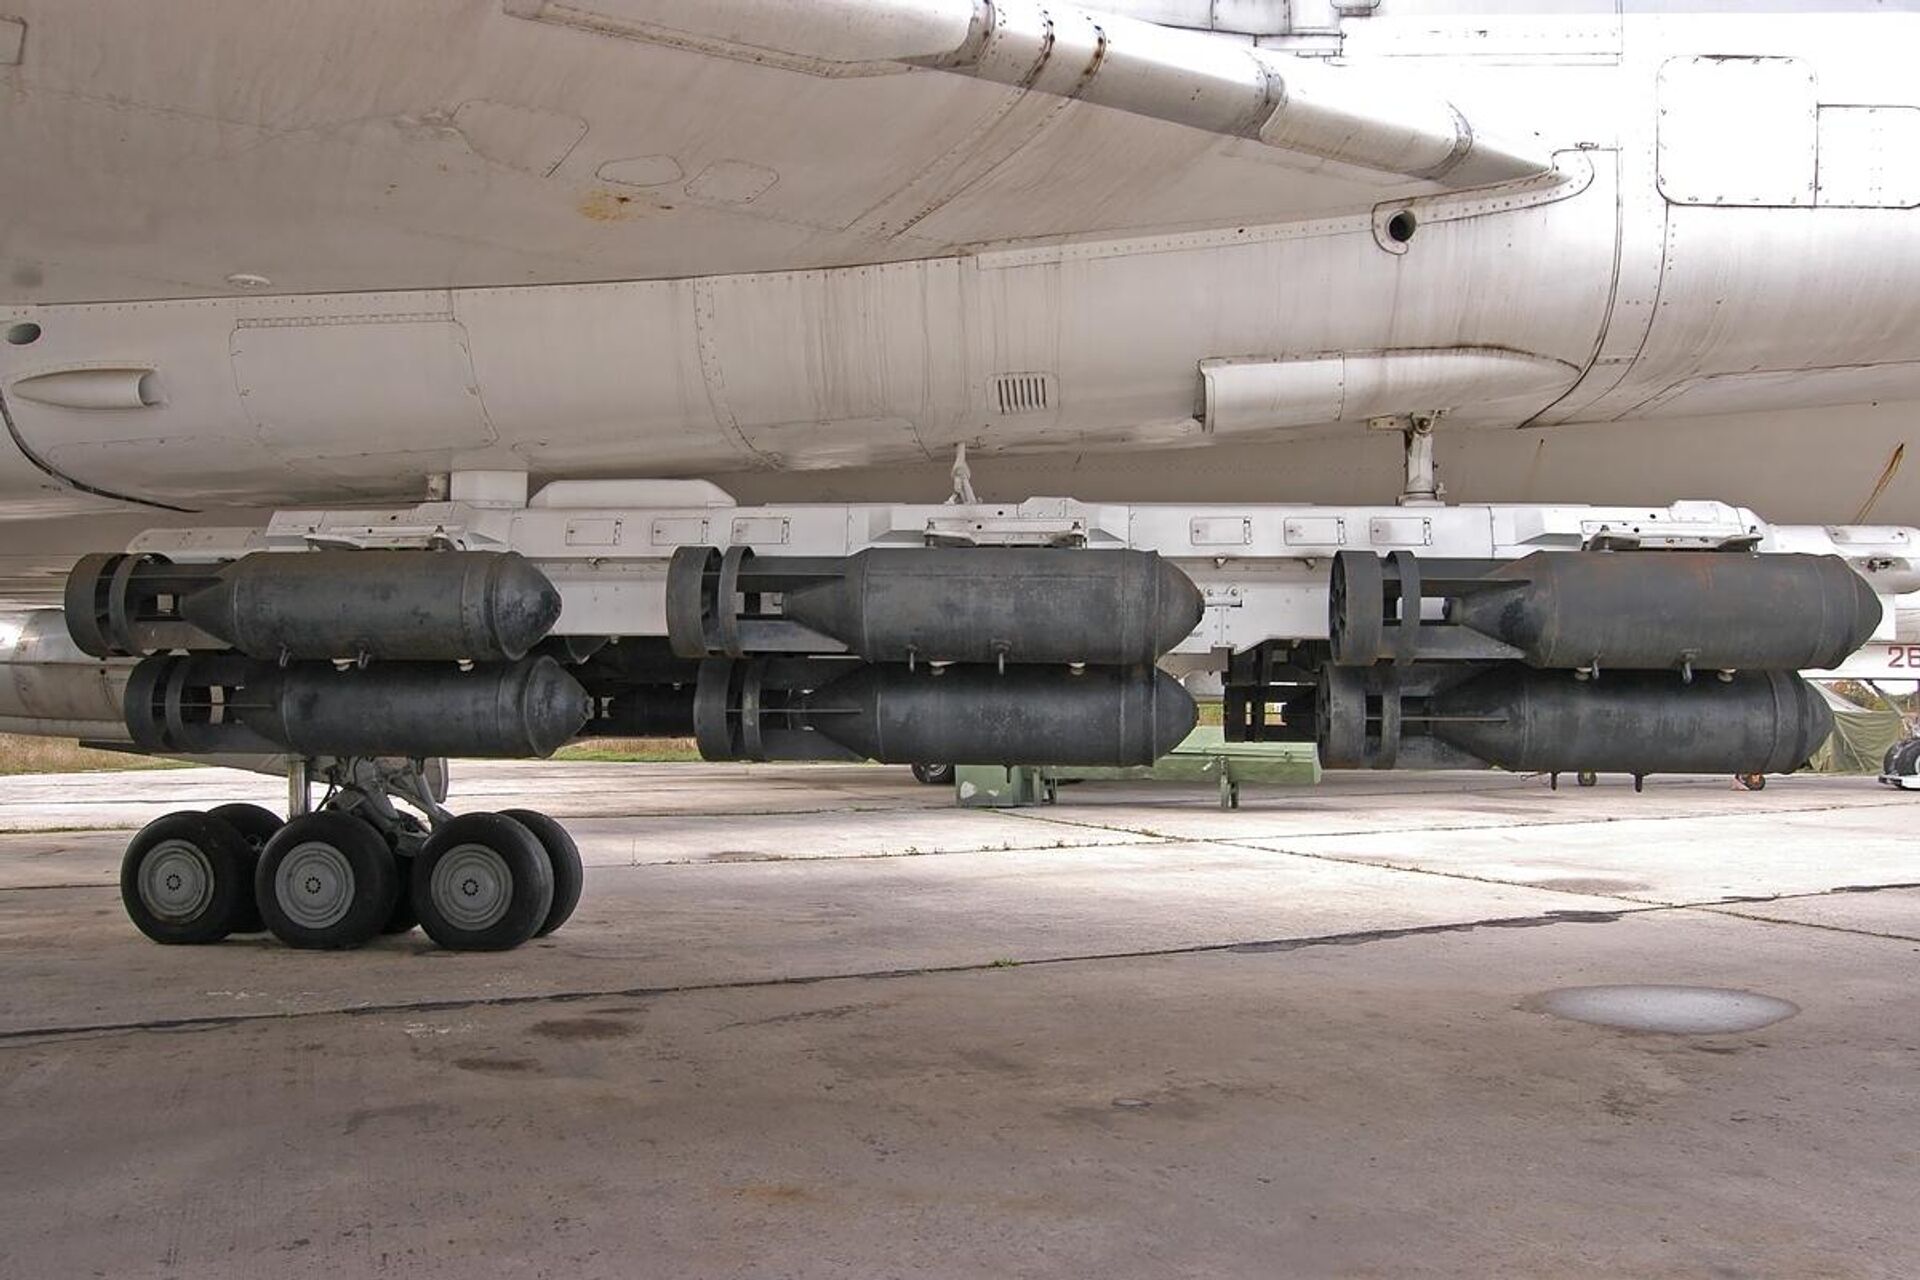 18 bombas FAB-500 suspendidas bajo un bombardero Tu-22M. En su conjunto, cuestan menos que un solo kit JDAM. - Sputnik Mundo, 1920, 24.06.2022